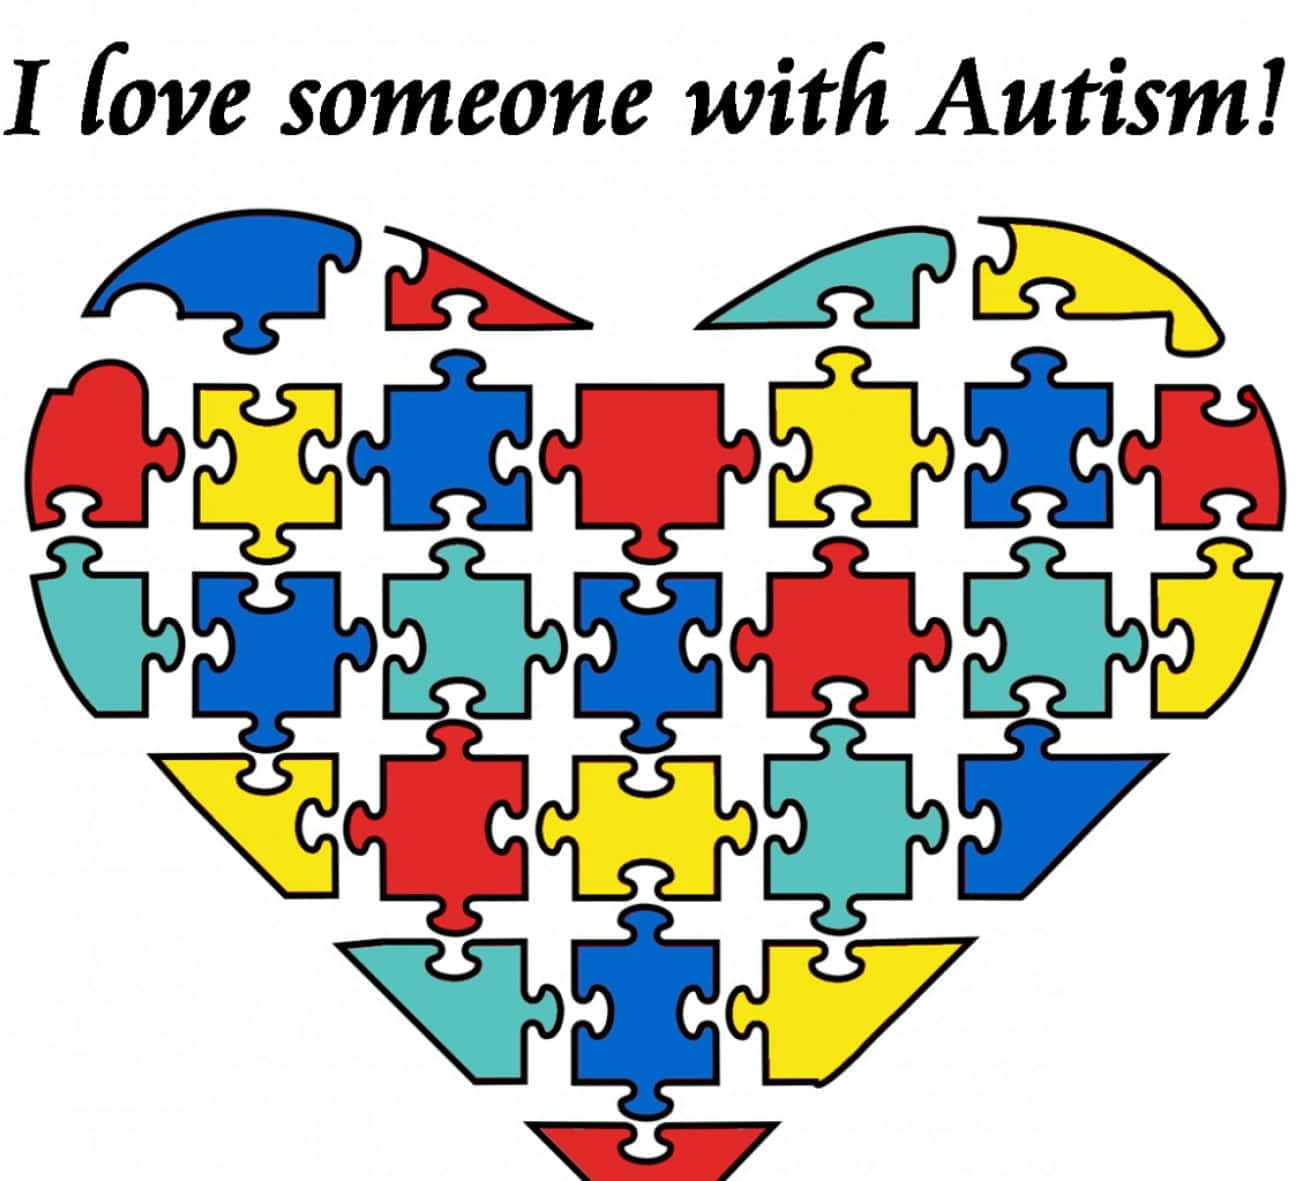 Ichliebe Jemanden Mit Autismus. Wallpaper